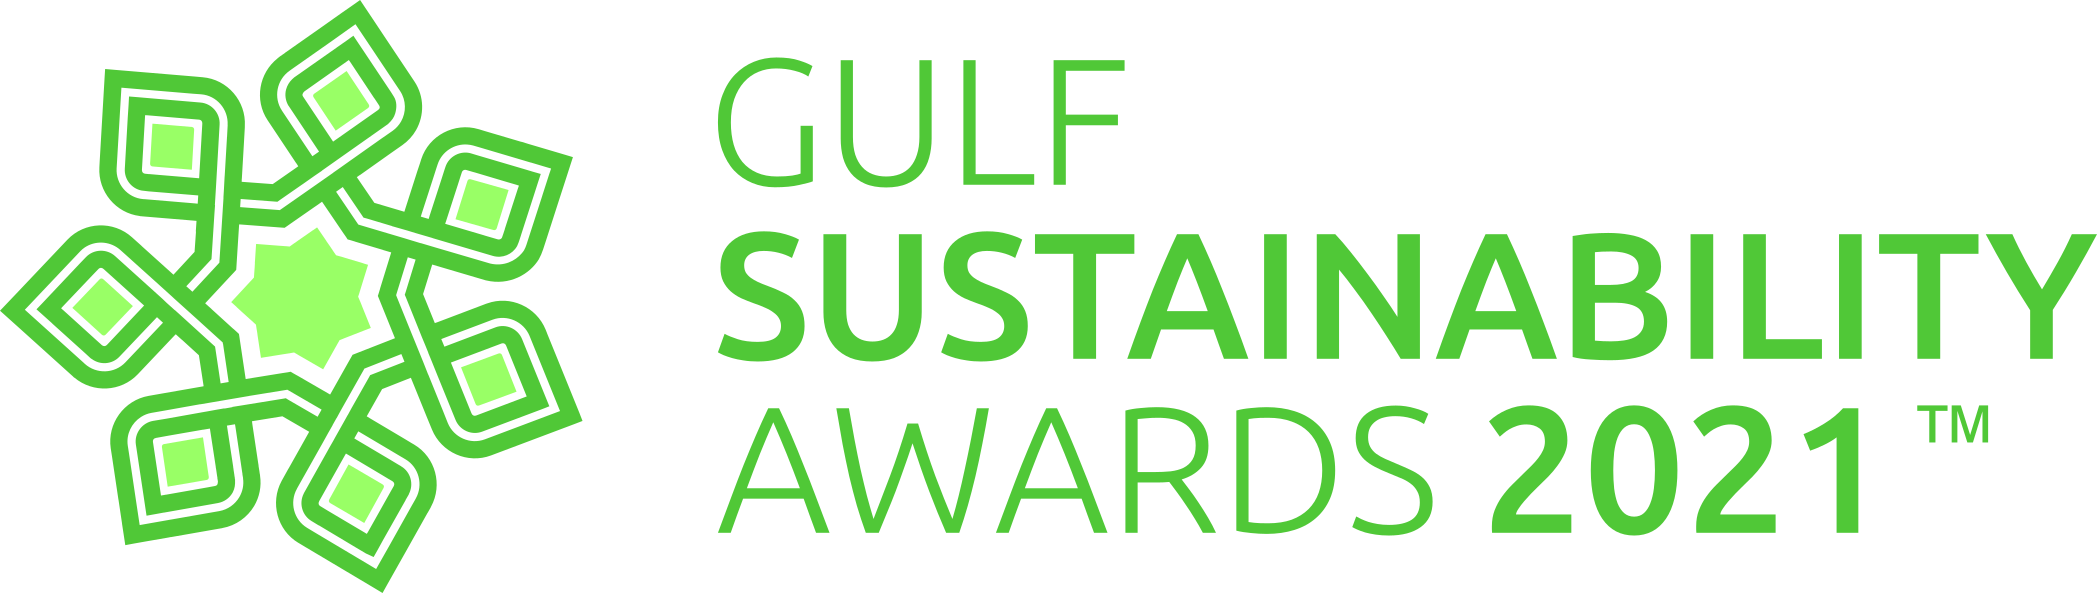 Gulf Sustainability Awards